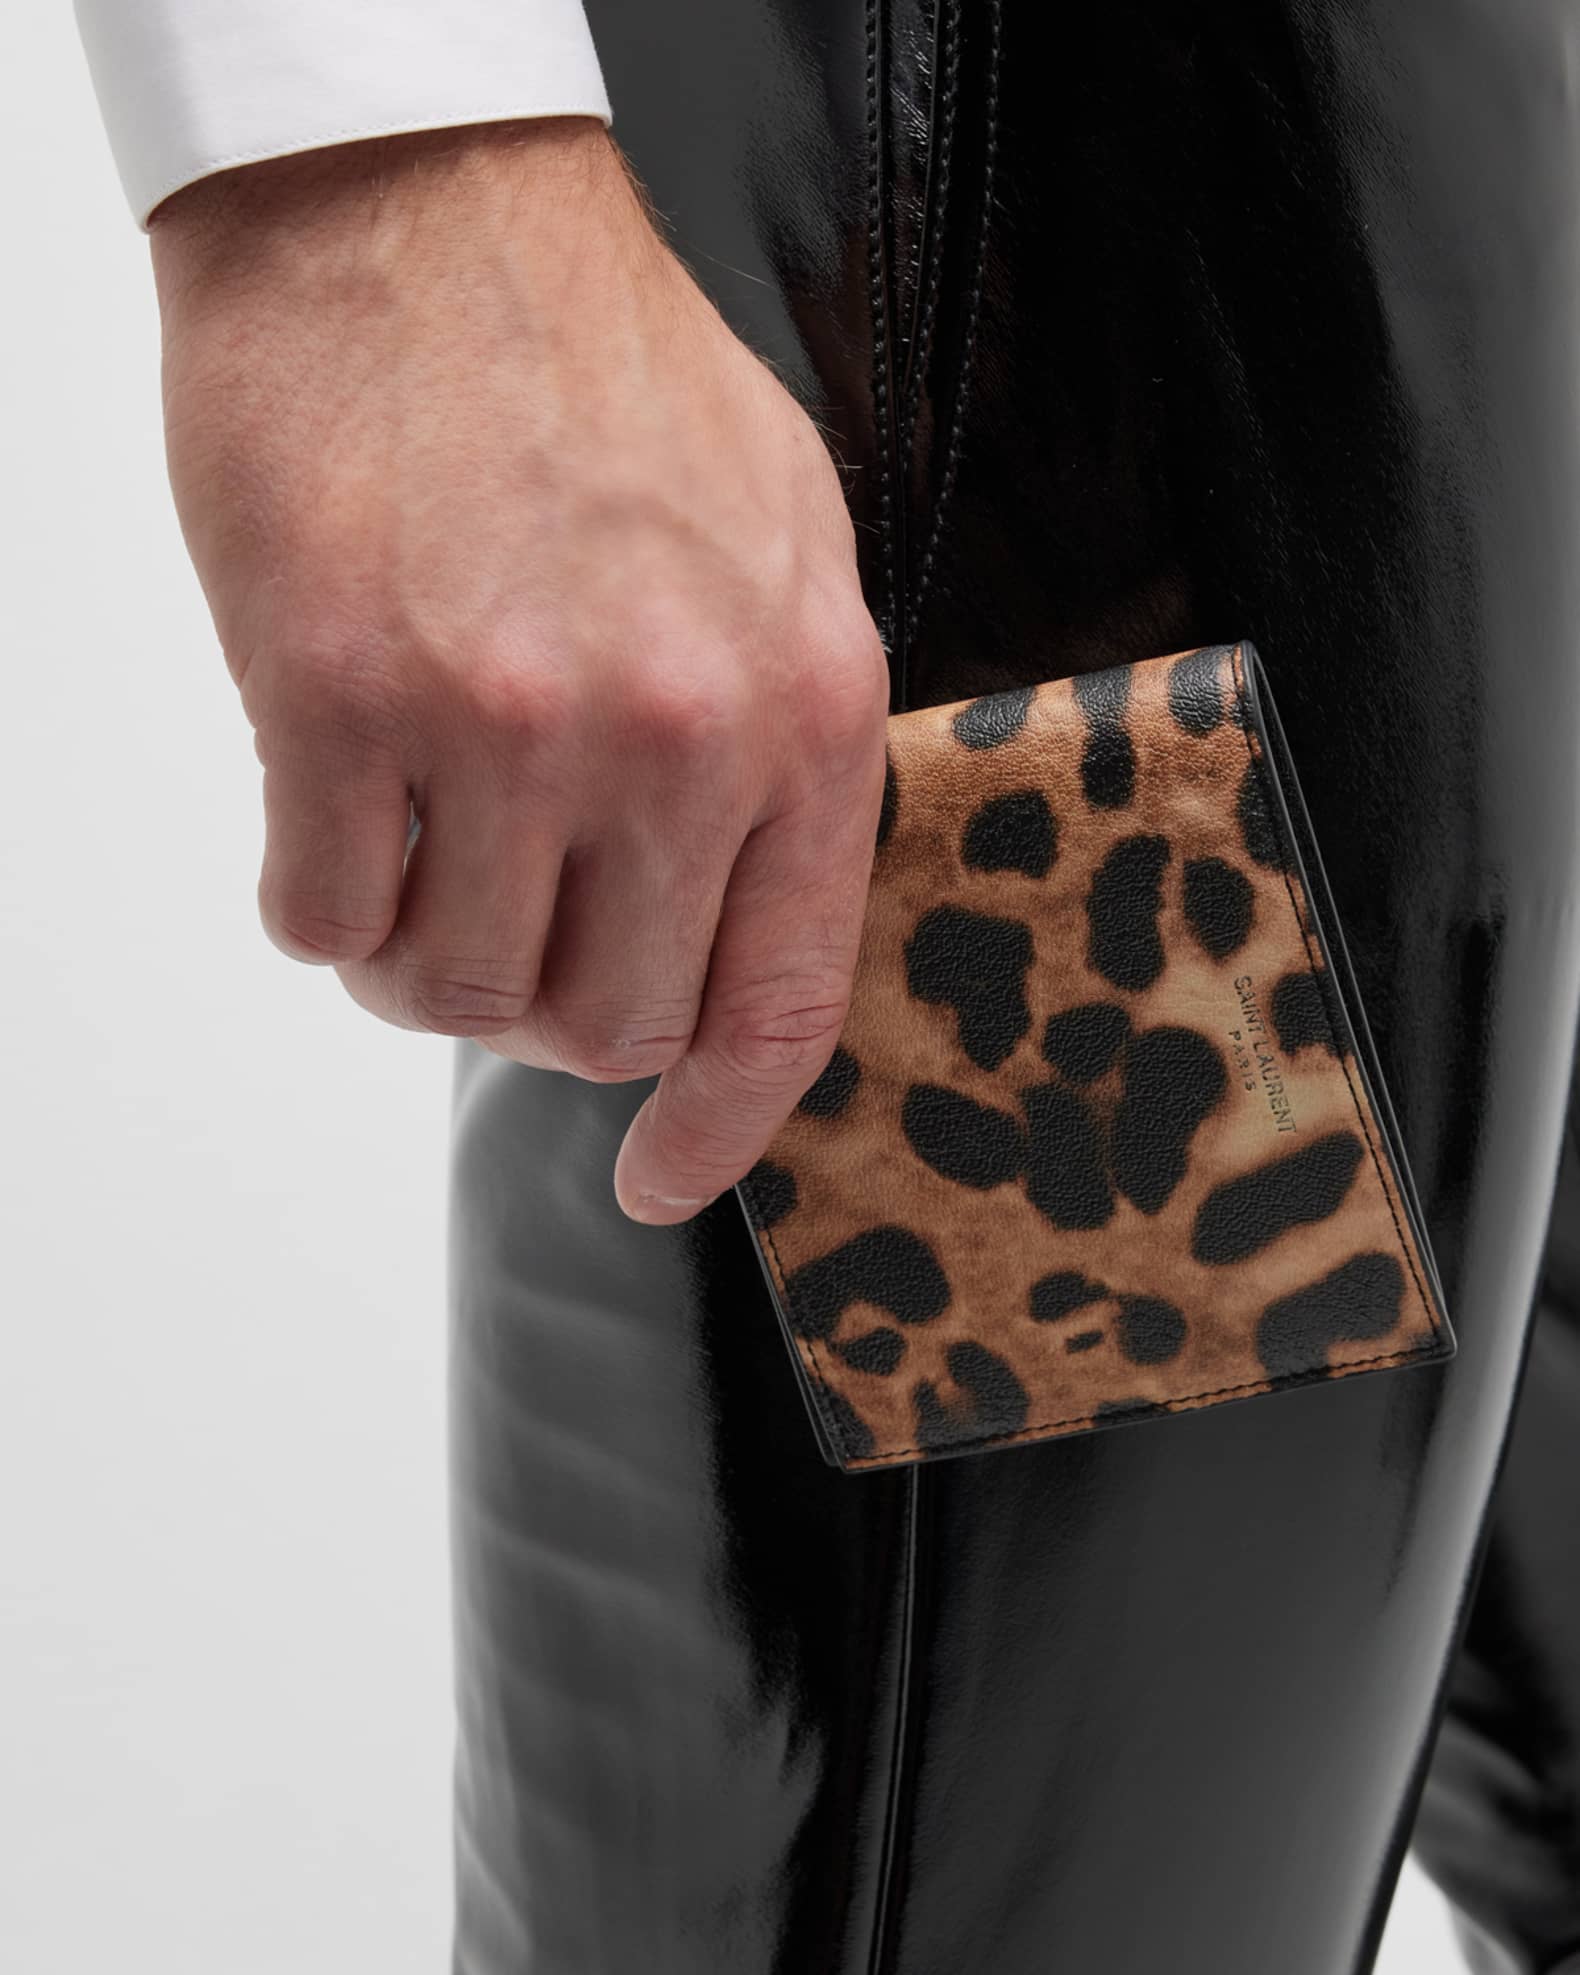 Saint Laurent Men's East/West Leopard-Print Leather Wallet